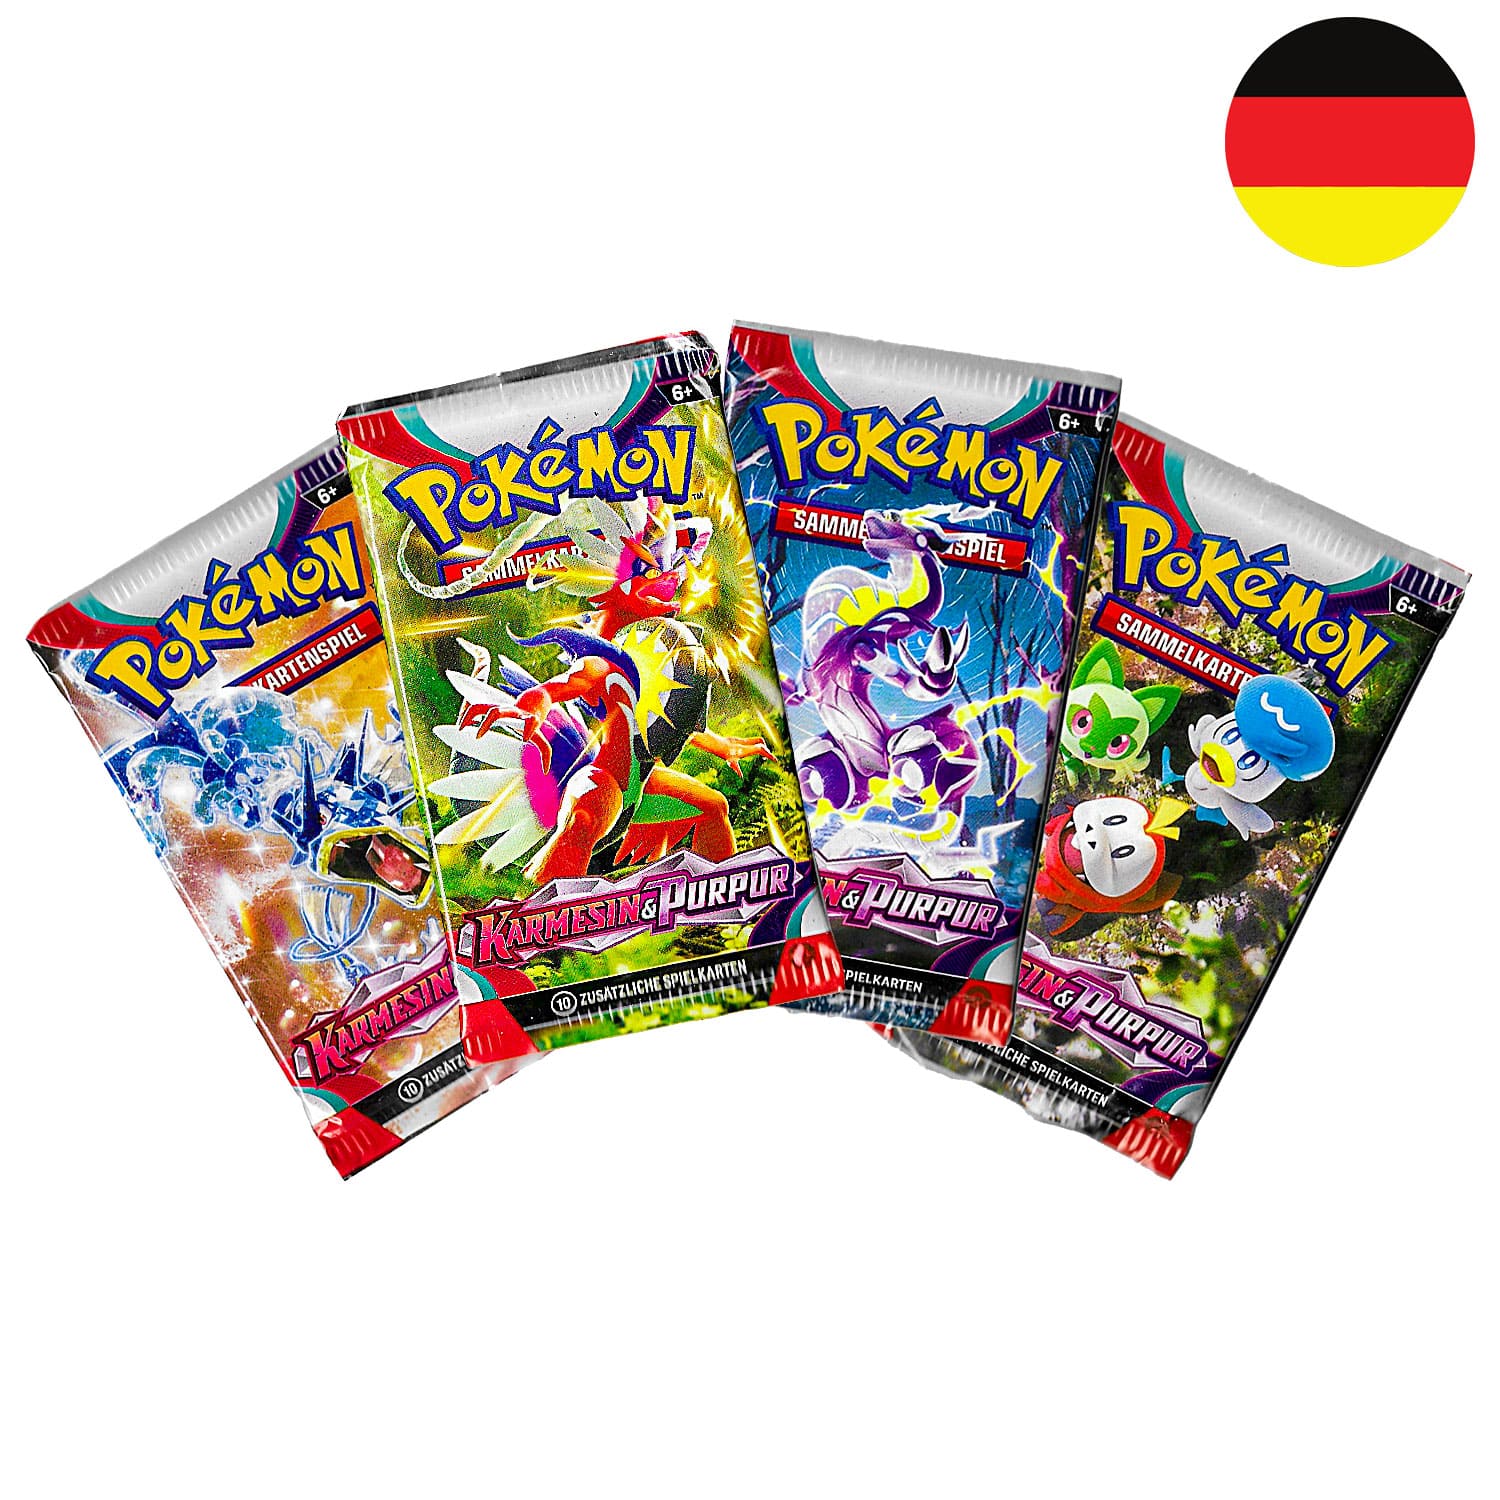 Das Pokemon Boosterpack Karmesin & Purpur (KP01) als Scan, alle 4 Artworks, mit der Flagge Deutschlands in der Ecke.